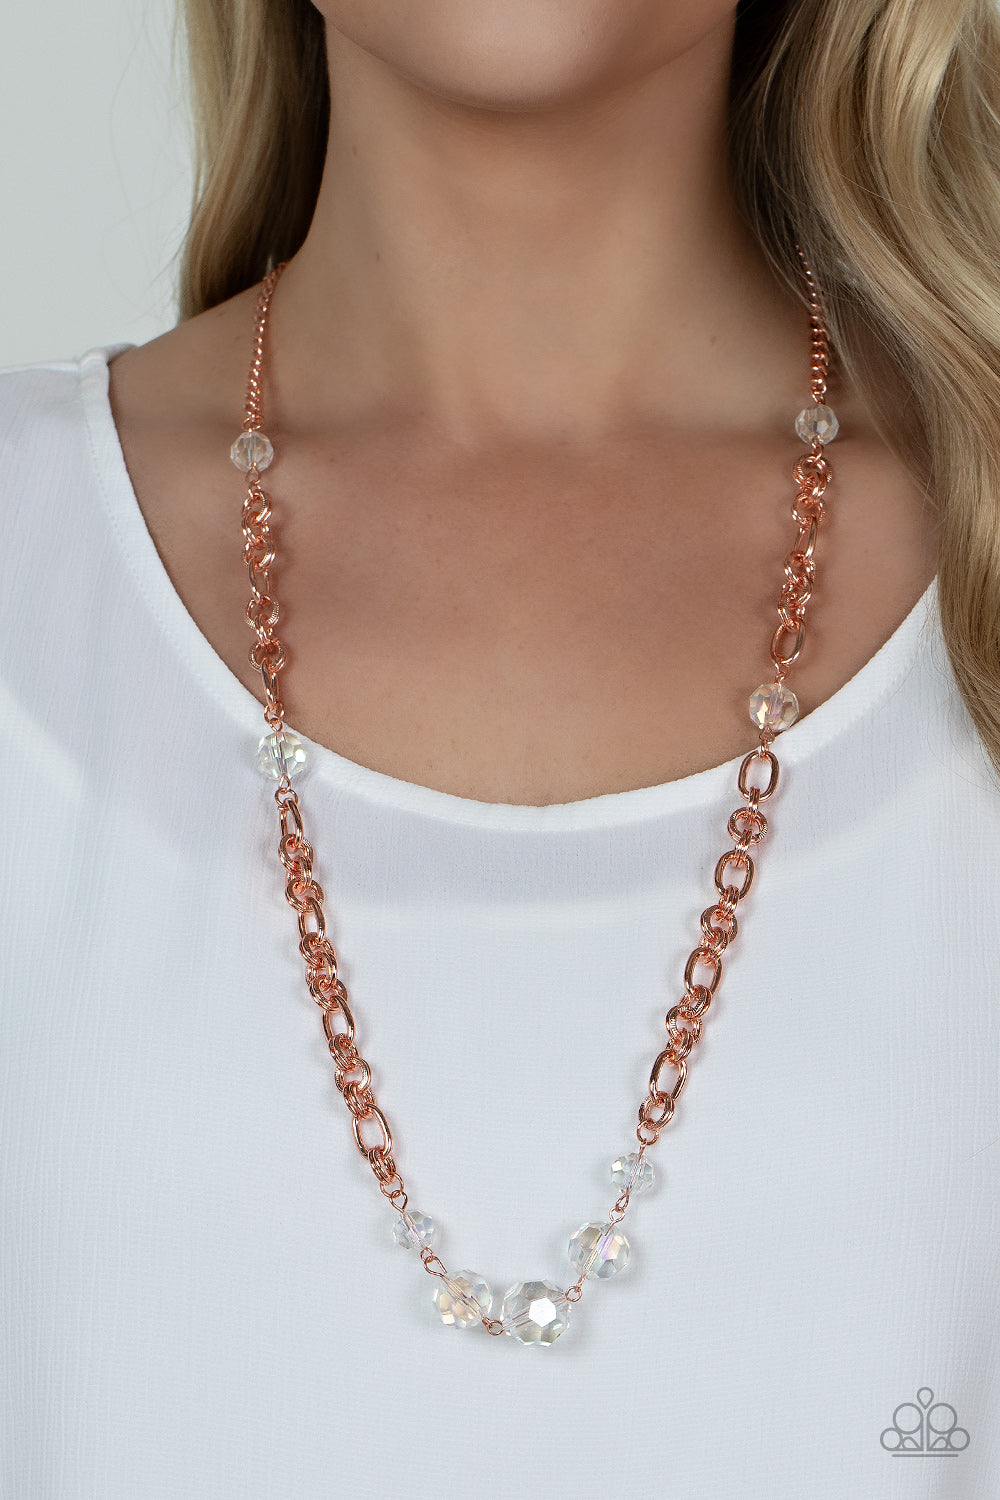 Prismatic Pick-Me-Up Necklace - Copper